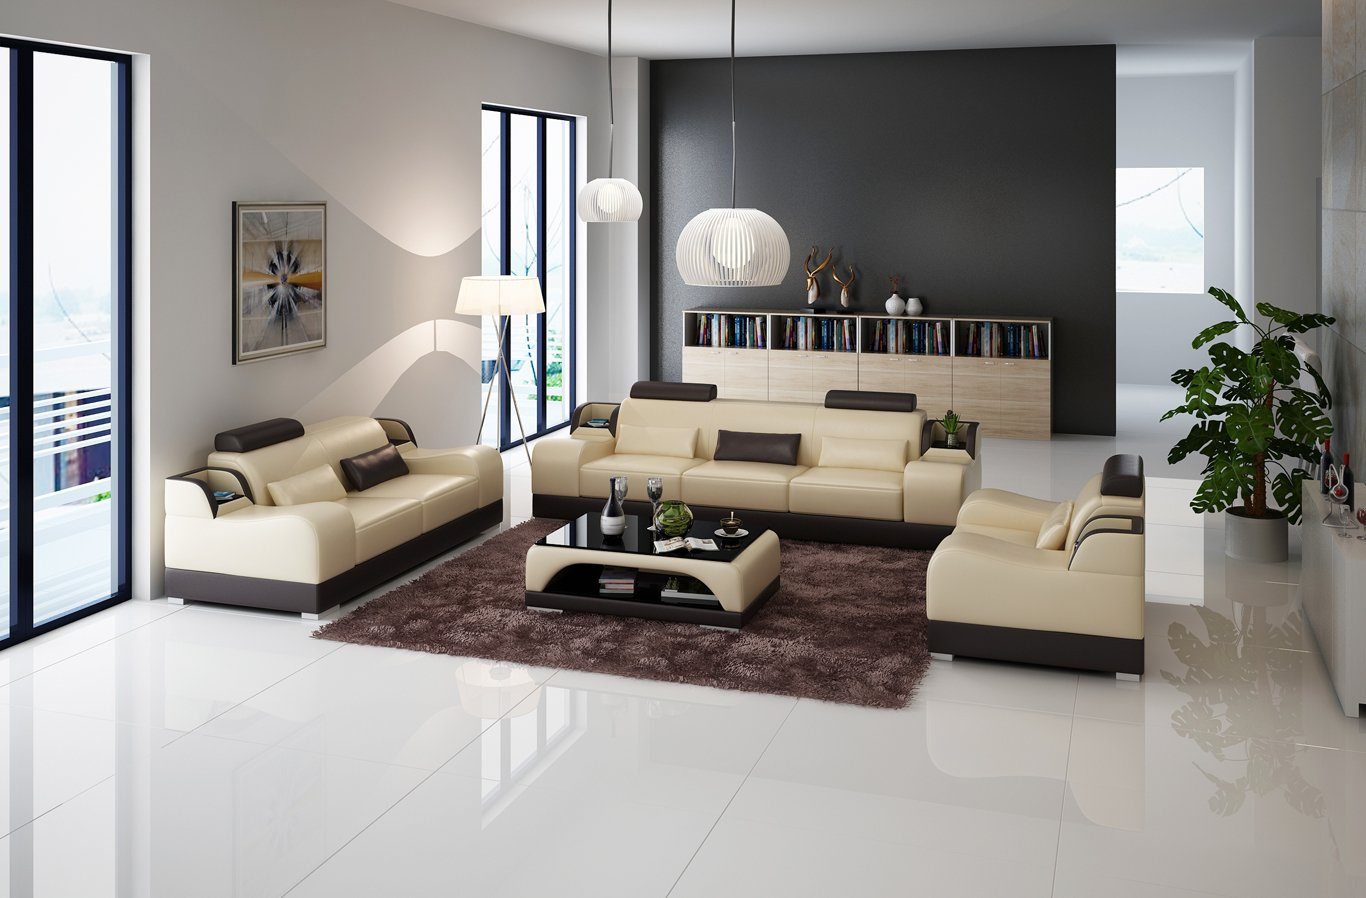 JVmoebel Sofa Design Sofas Moderne 2x Beige/Braun Gruppe Polster Set 3 Sofas Couchen Sitzer